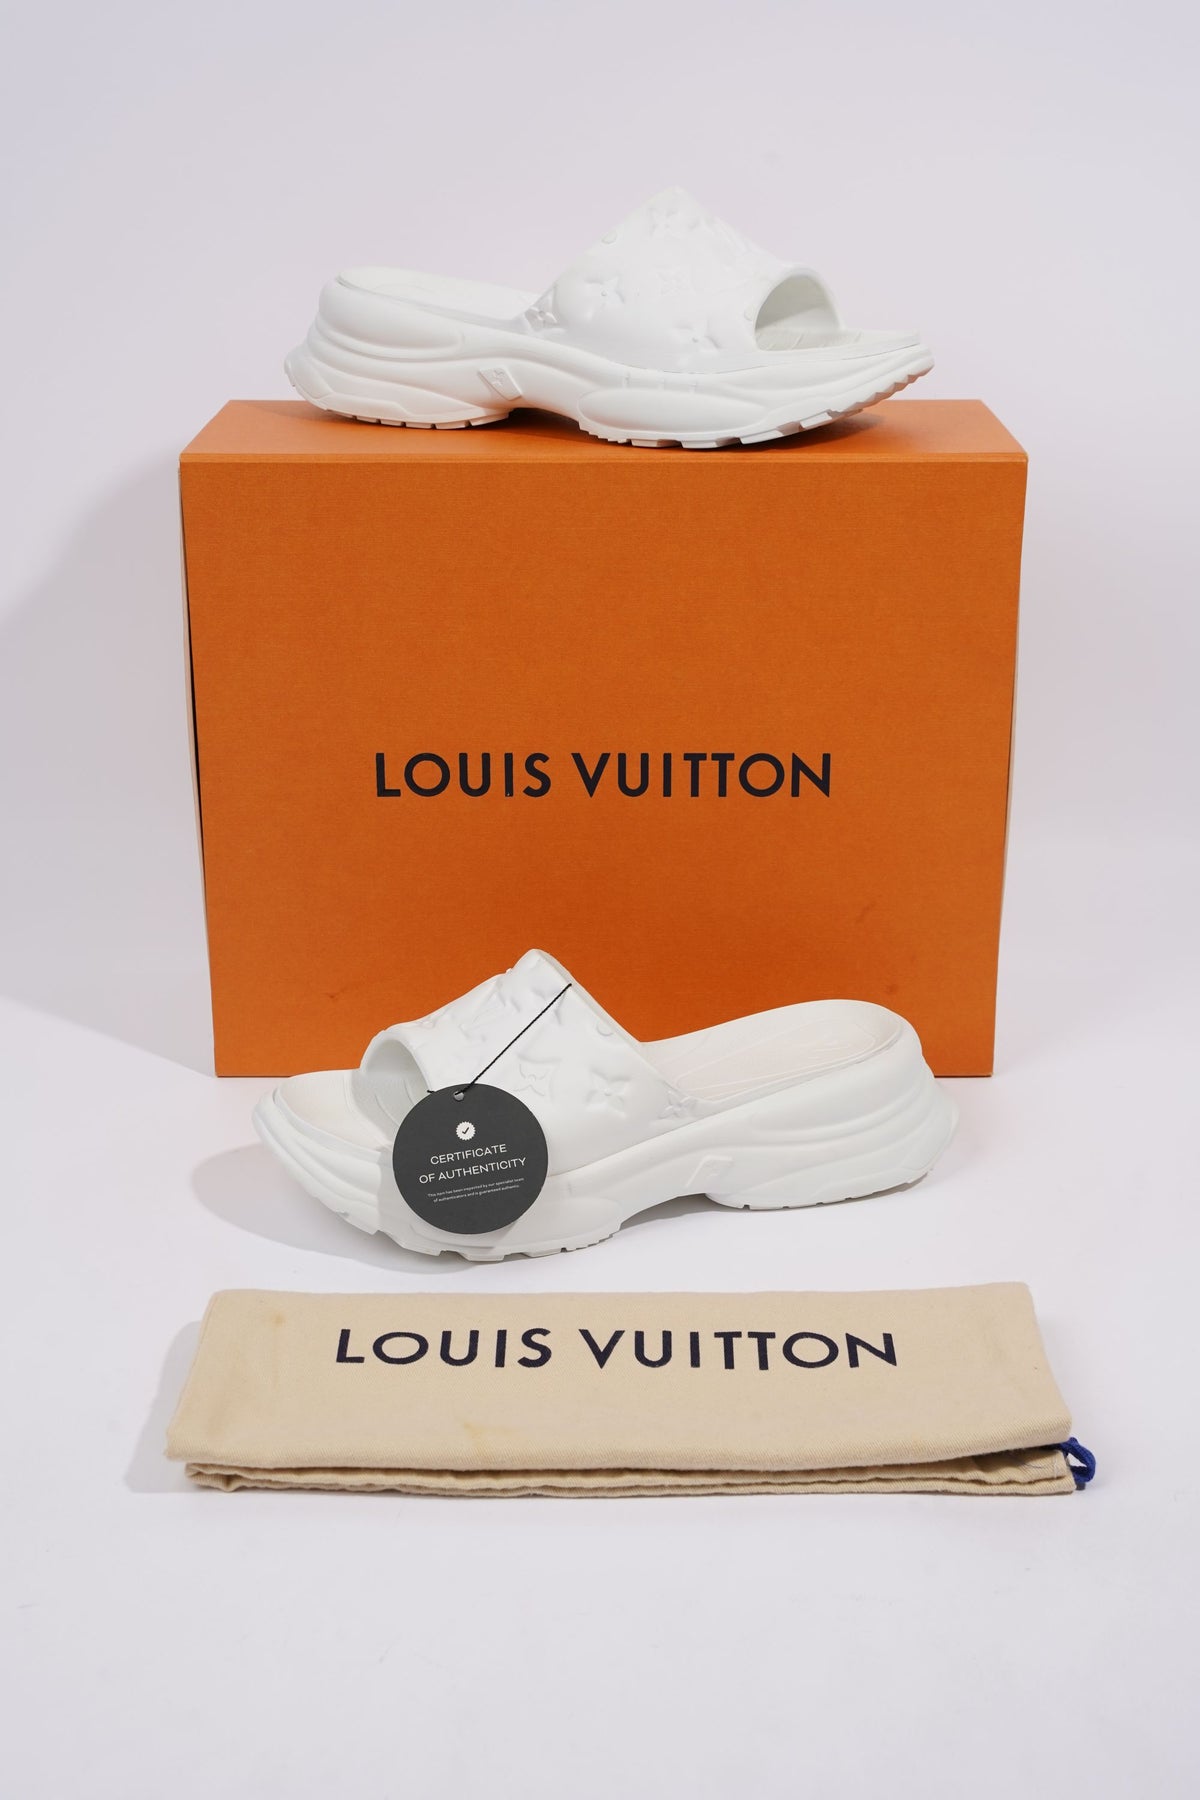 Louis Vuitton Packaging -  UK